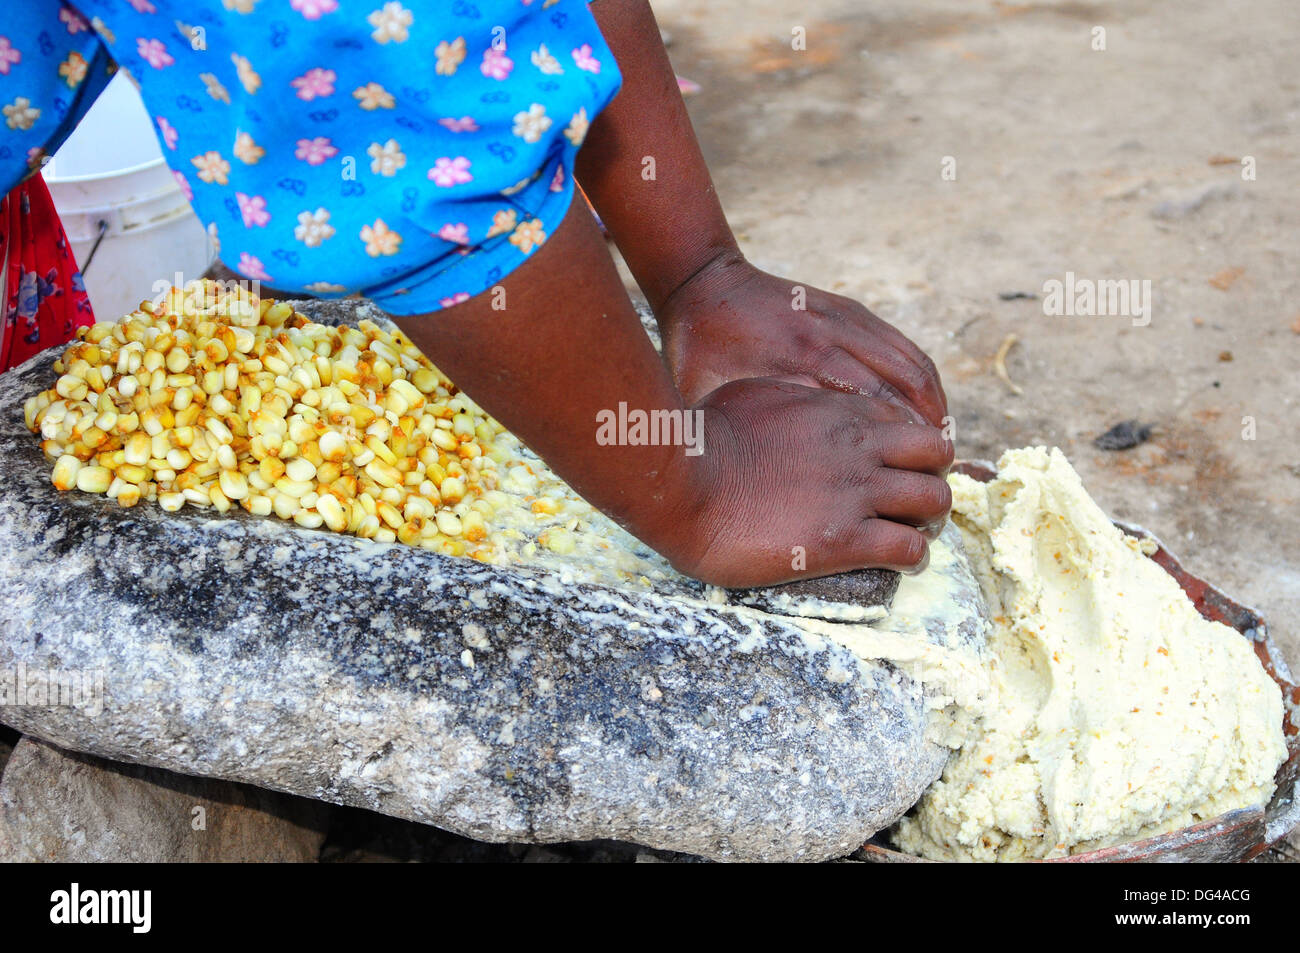 Moledora de maiz antigua fotografías e imágenes de alta resolución - Alamy